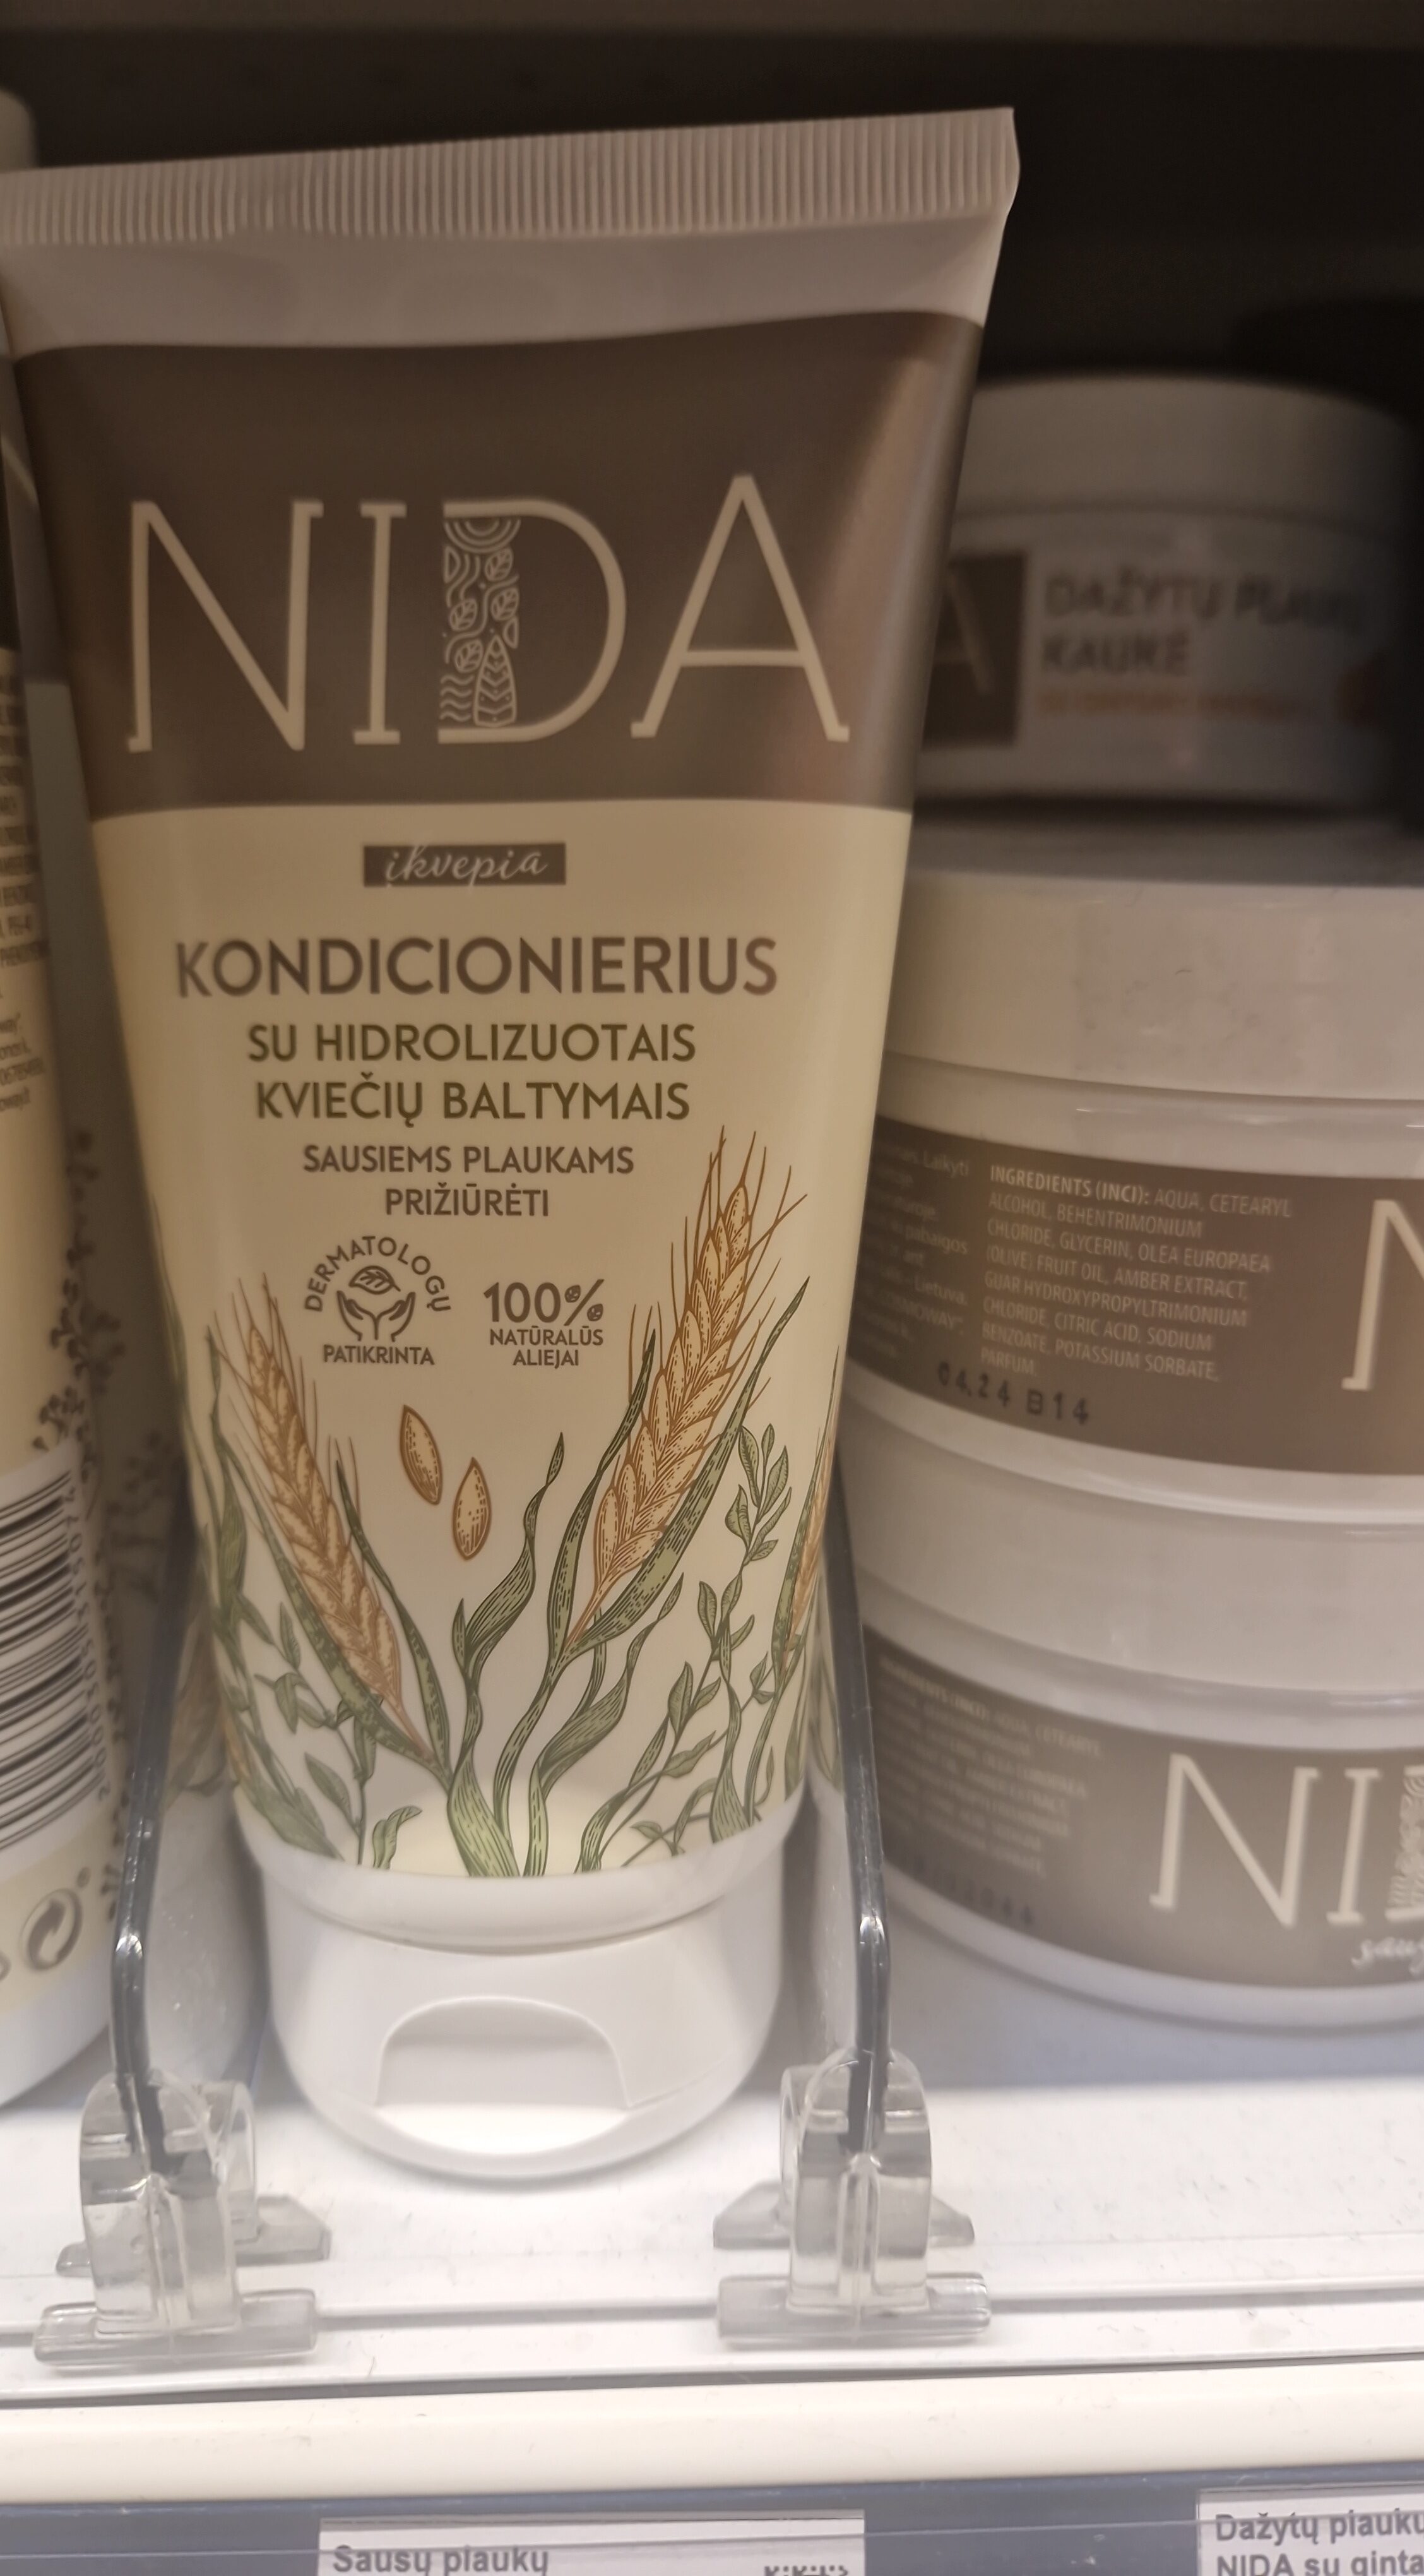 Sausų plaukų kondicionierius NIDA su kviečių baltymais - Product - lt